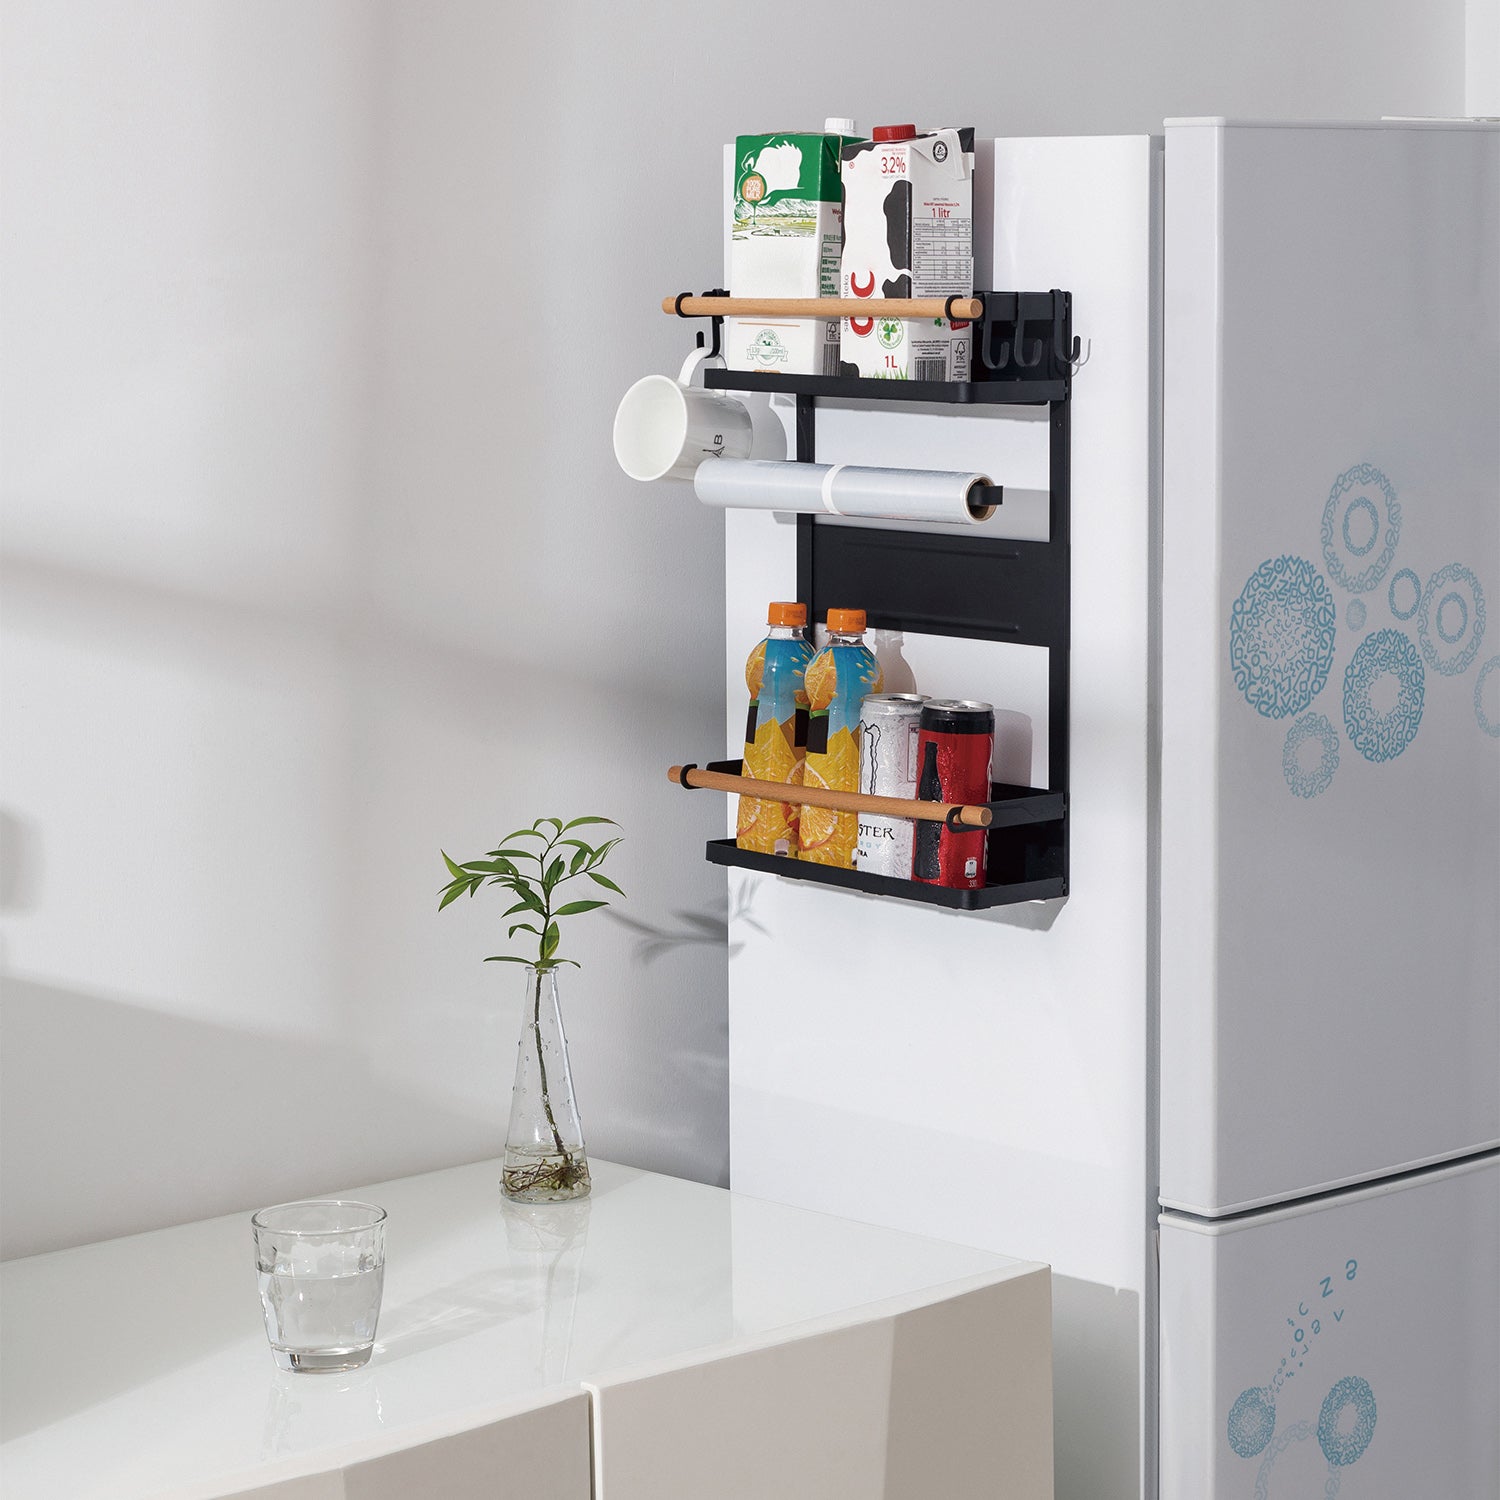 Maclean MC-910 étagère magnétique pour machine à laver réfrigérateur, noir,  12kg max, – Euroelectronics EU